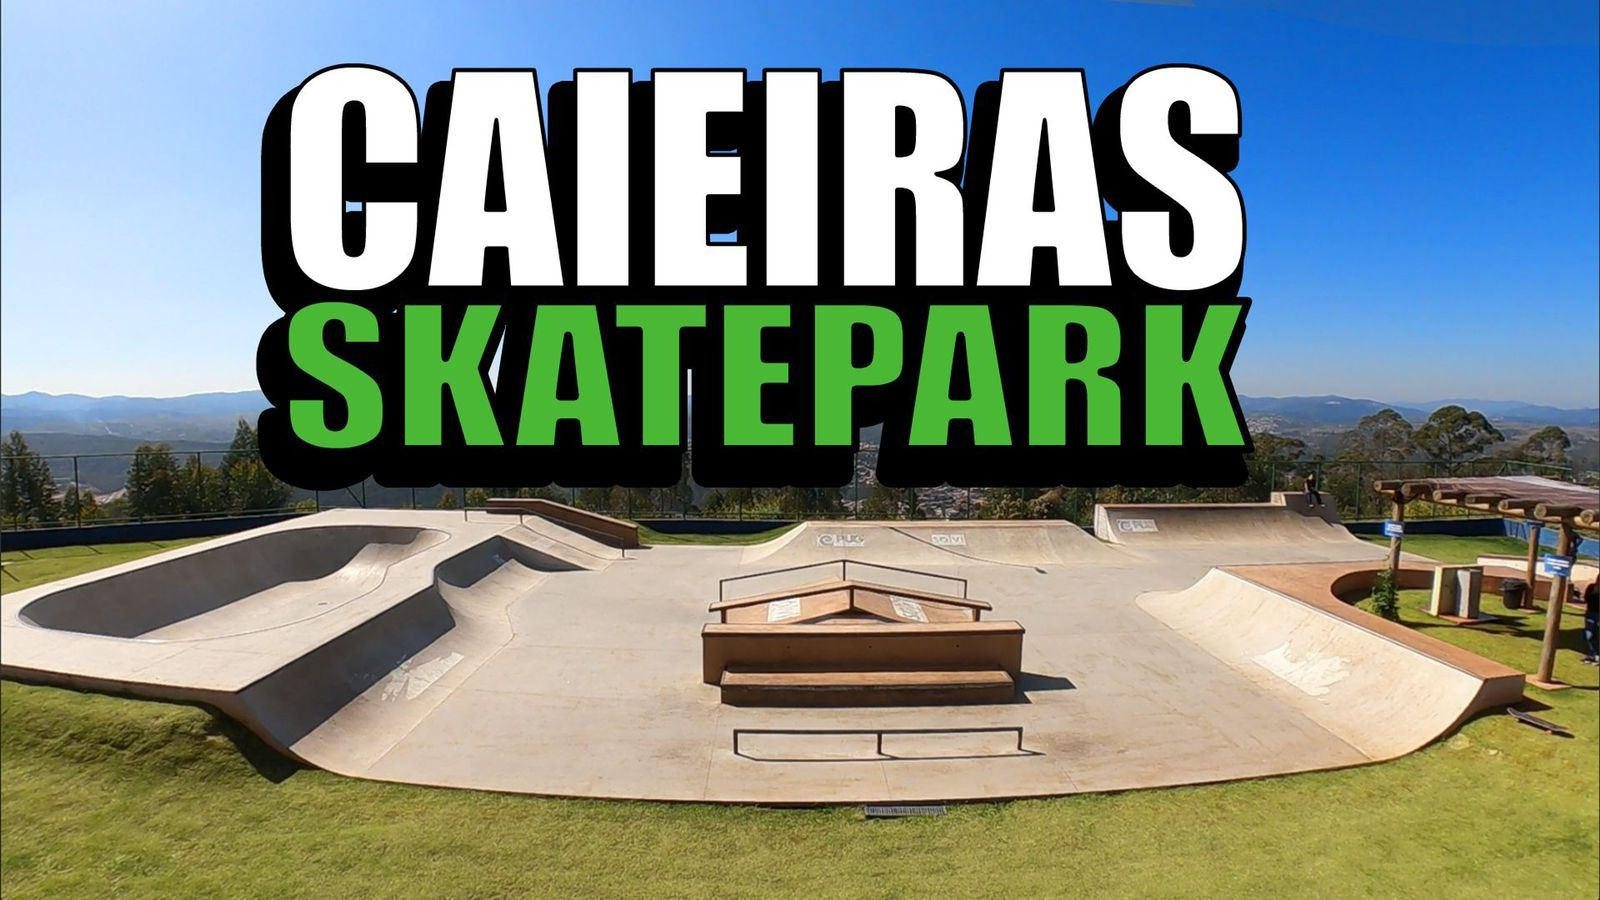 Caieiras Skatepark